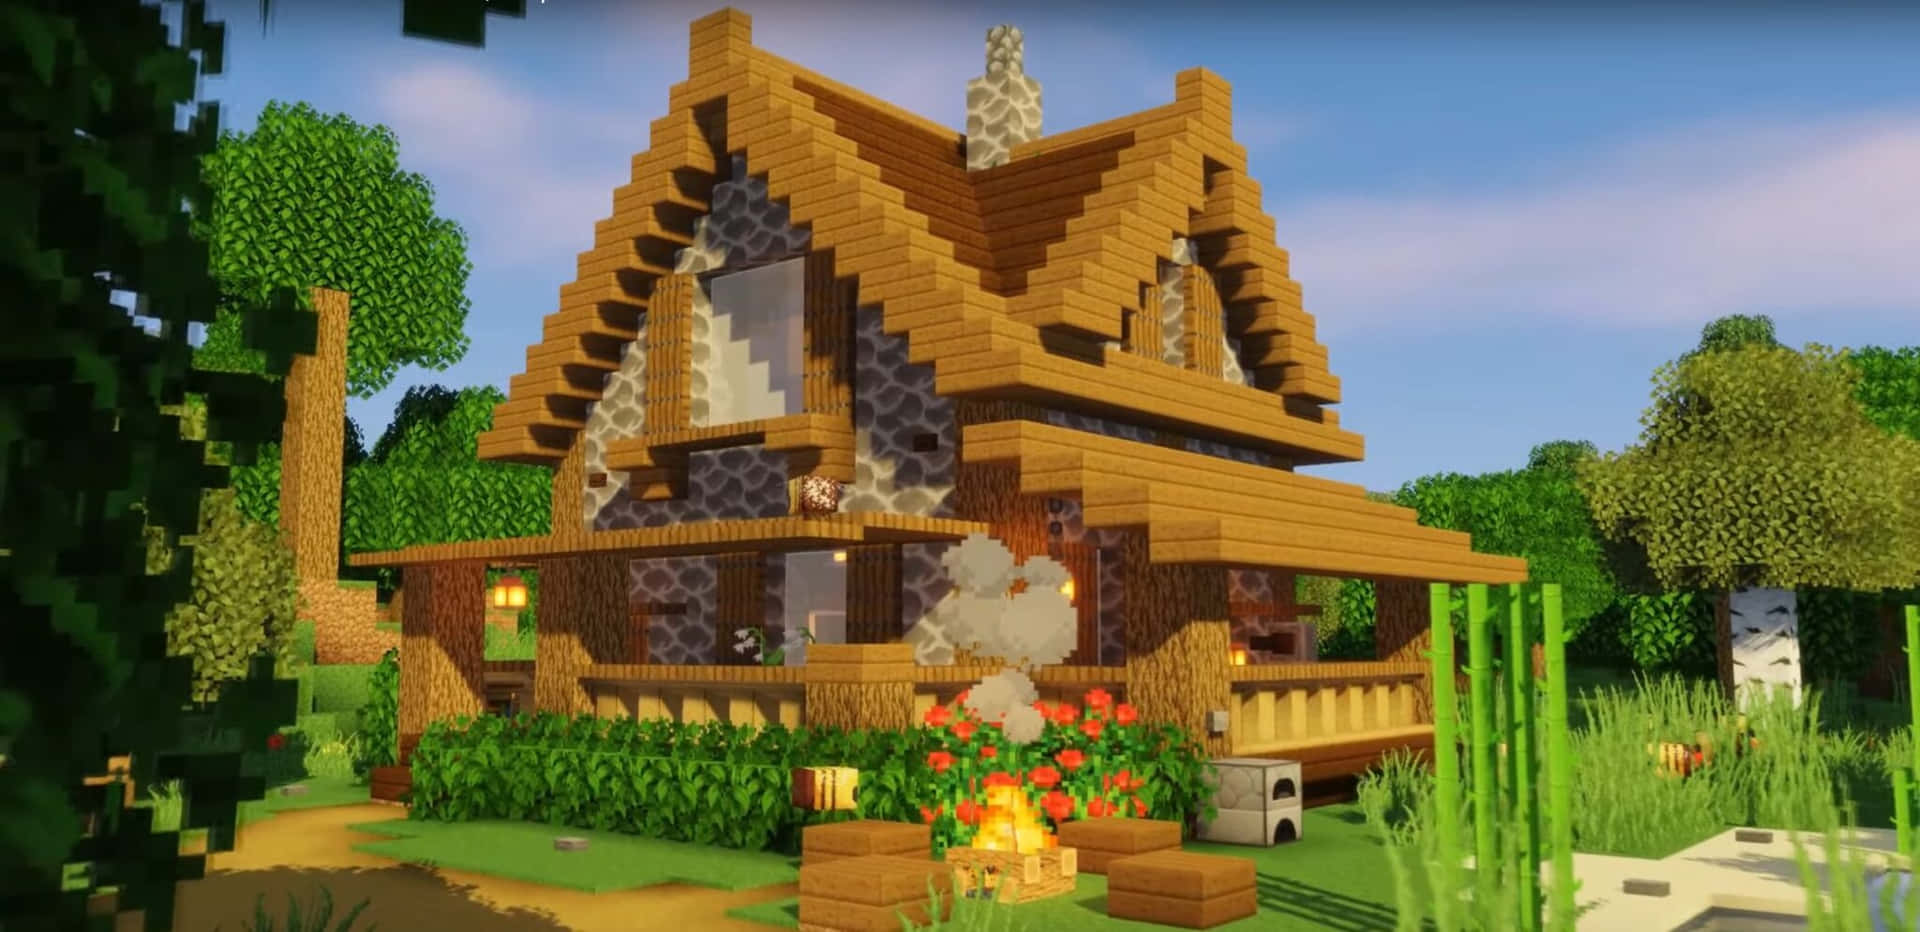 Construções De Minecraft Hd  Cute minecraft houses, Minecraft houses,  Minecraft cottage